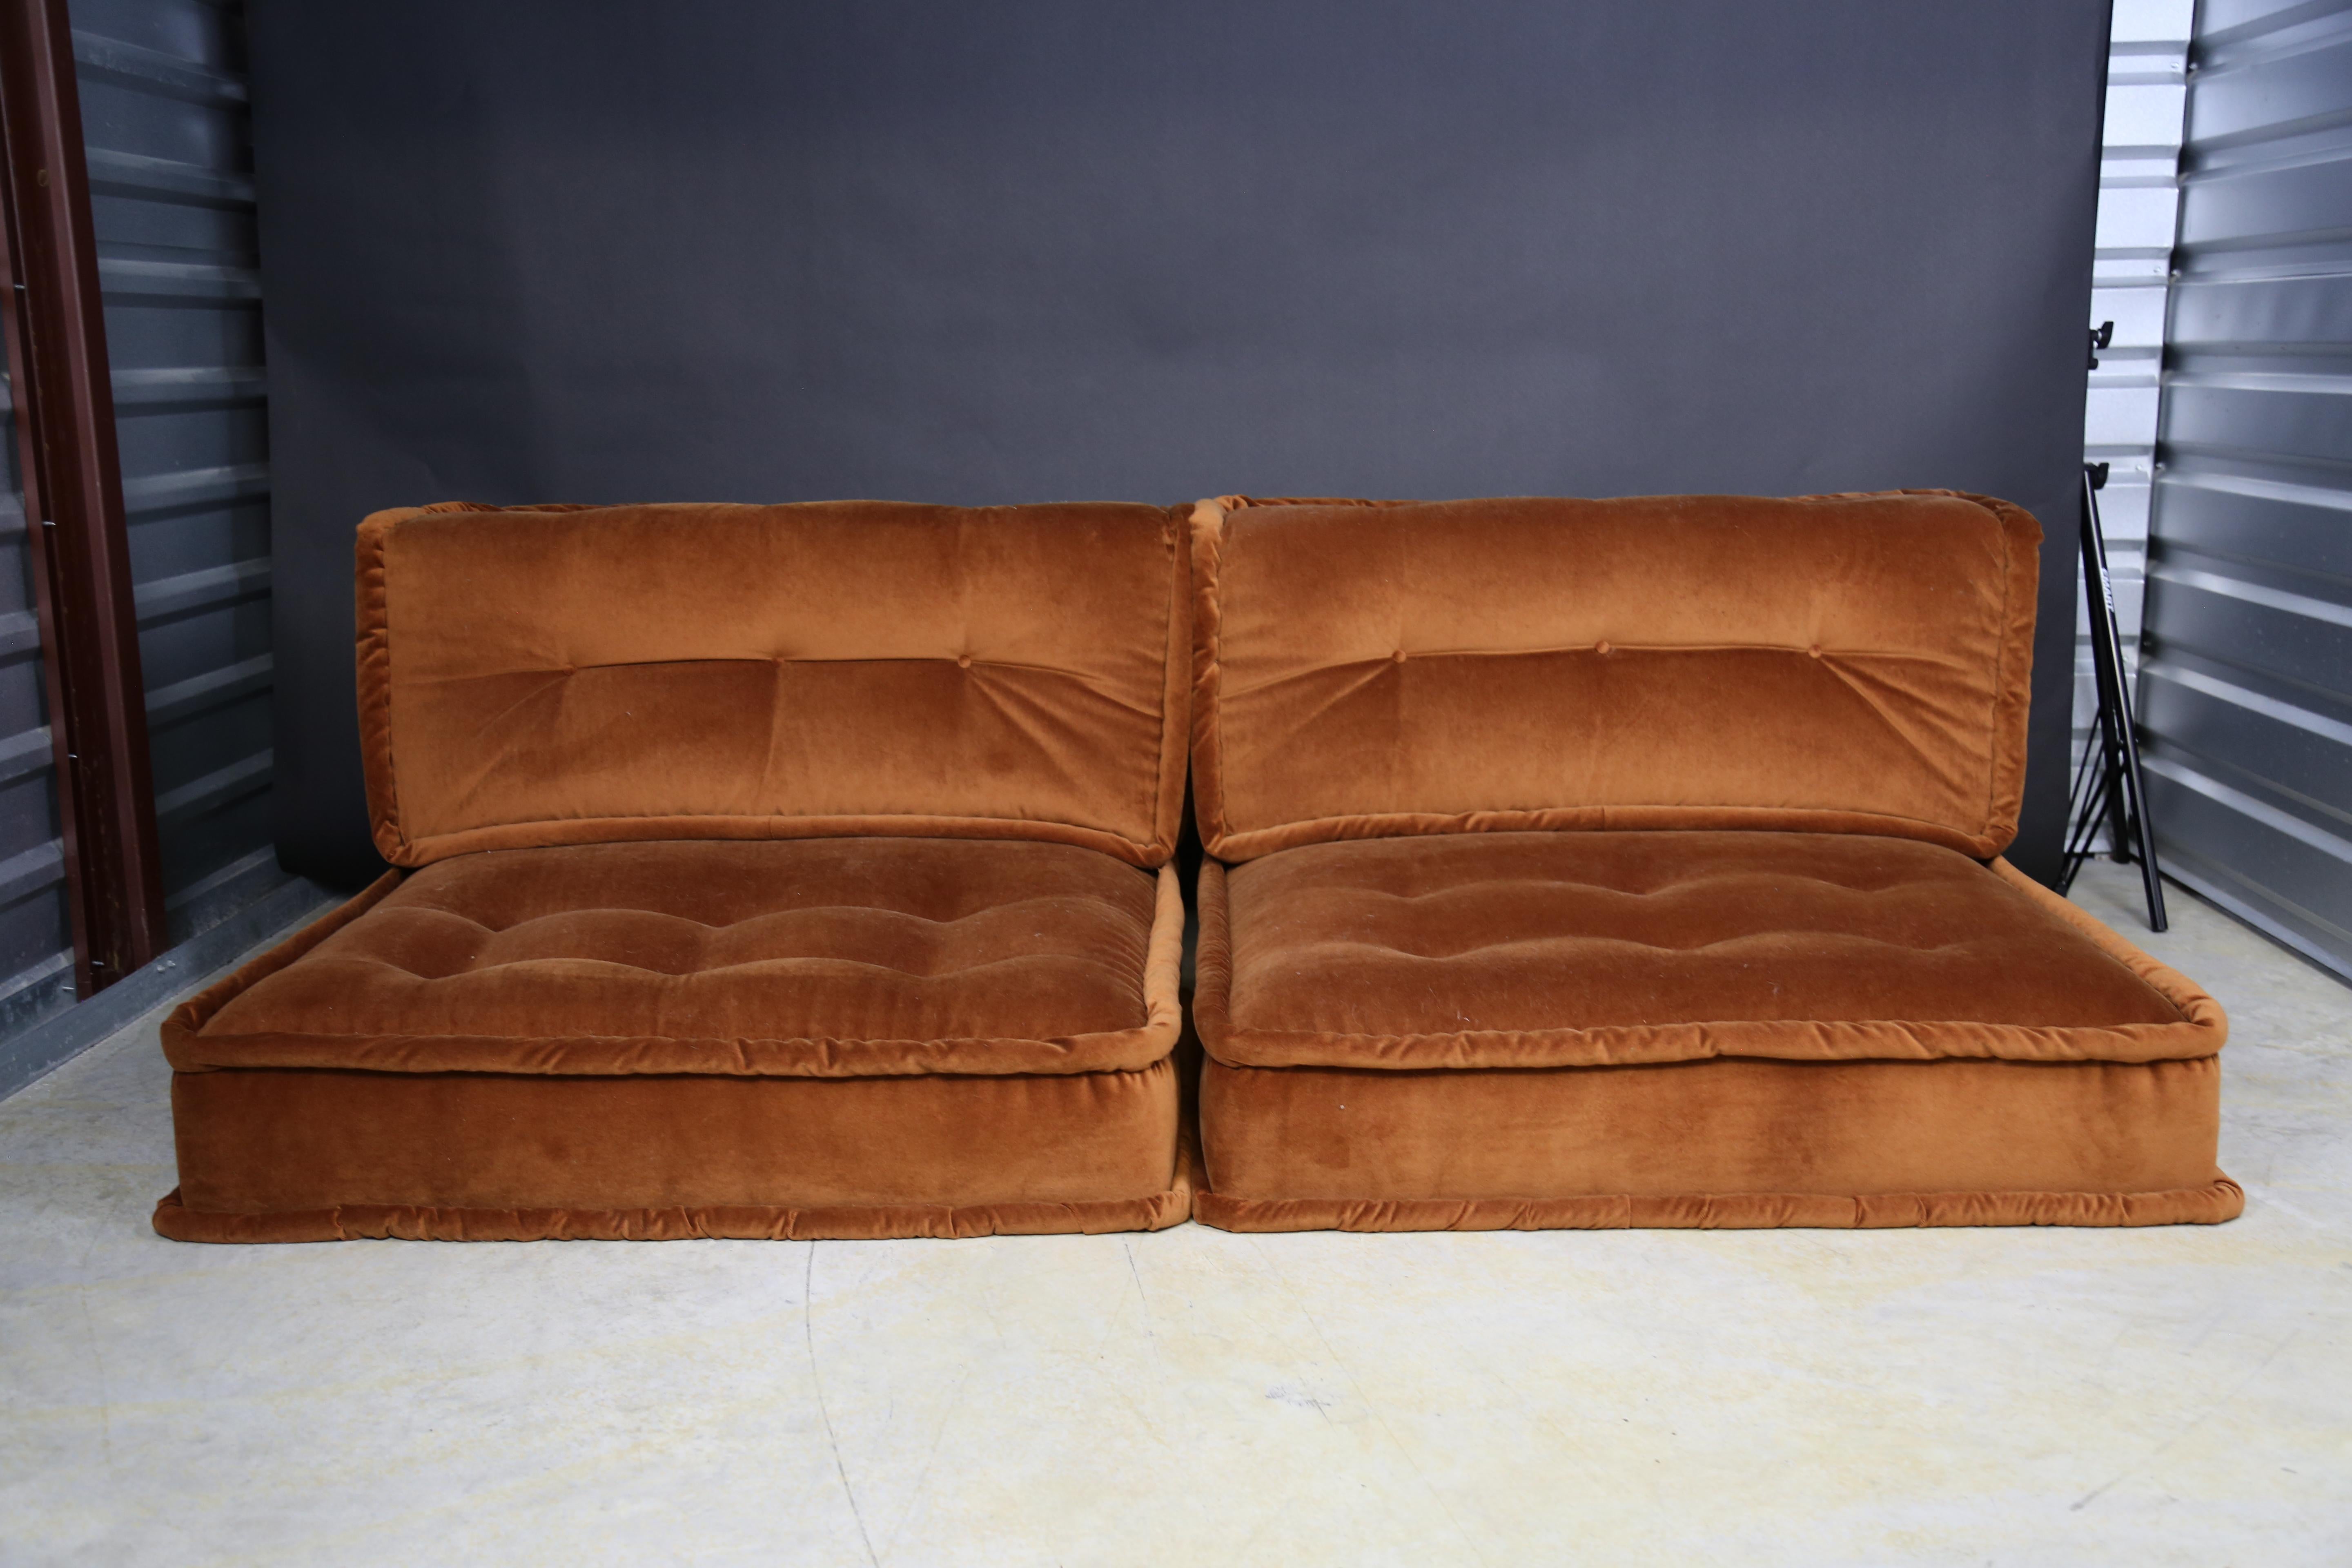 American Modular sofa in the style of Le Mah Jong